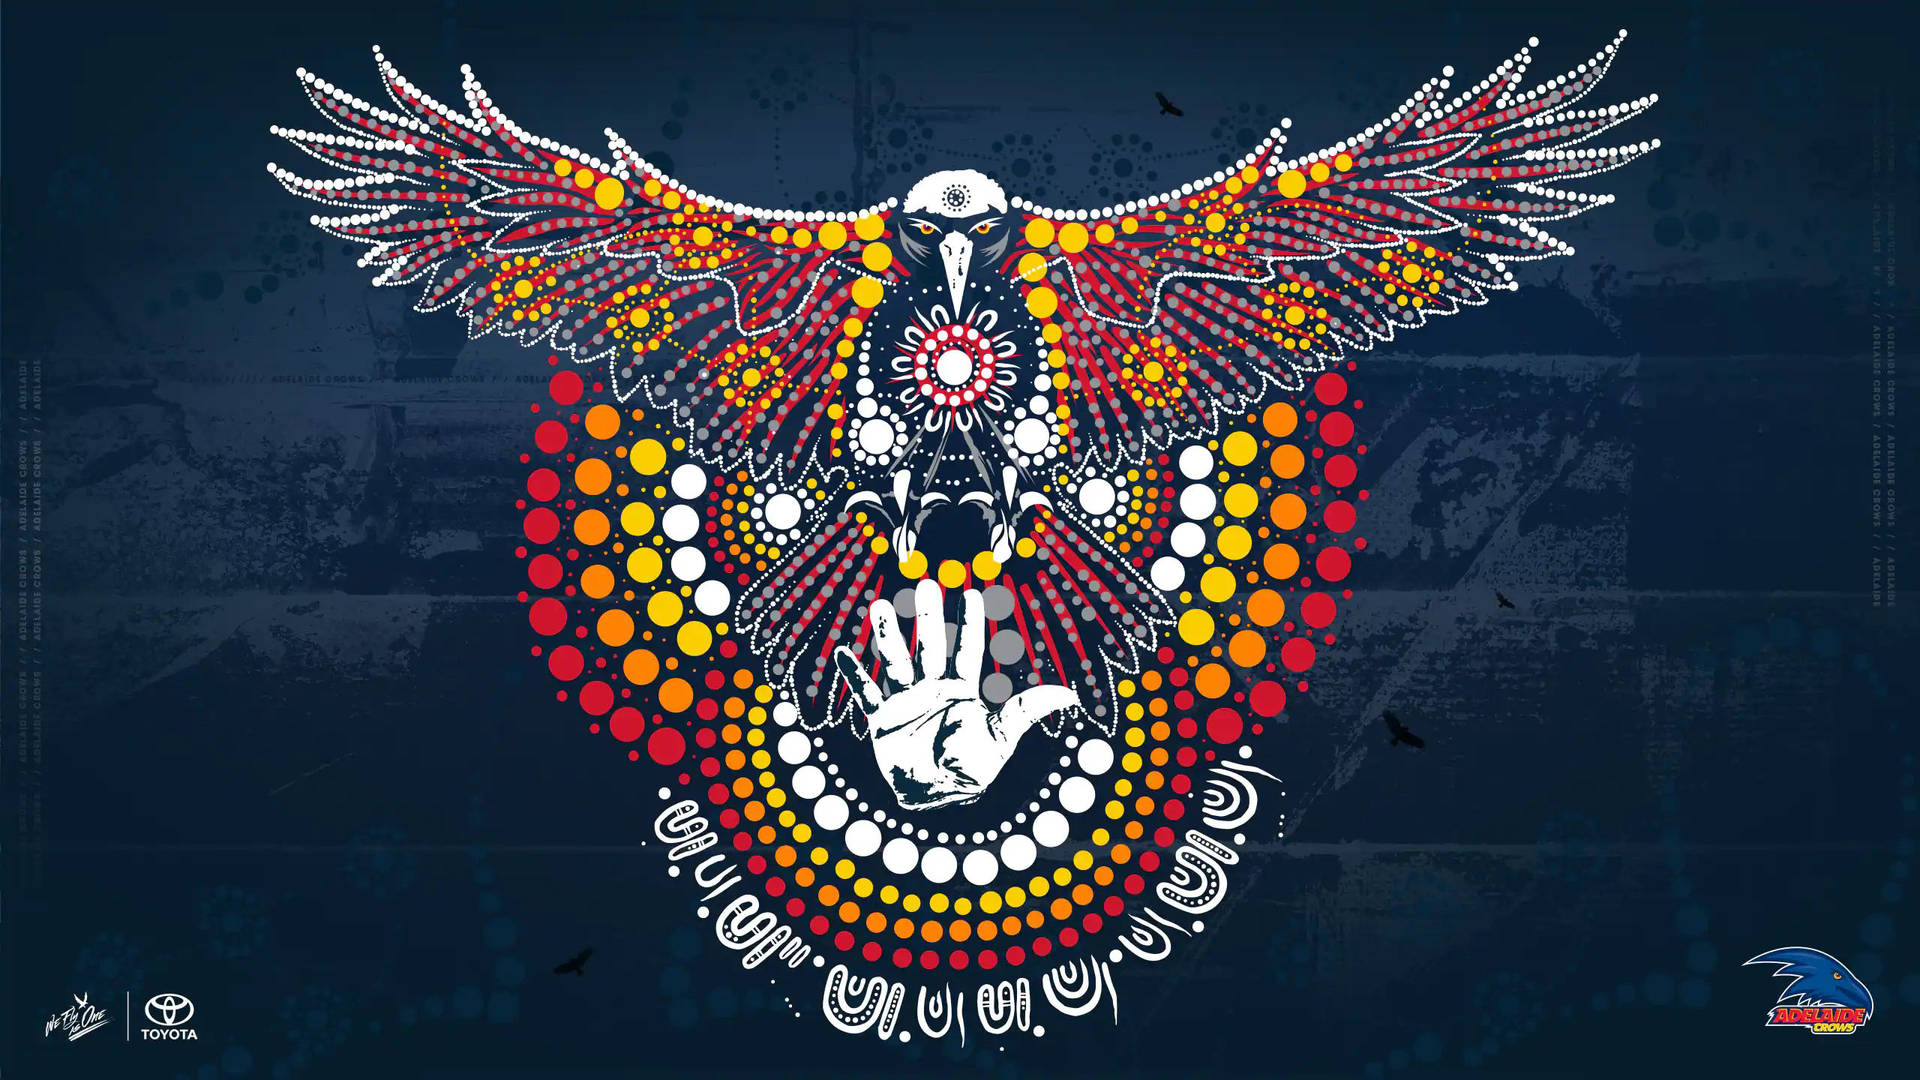 Afl Adelaide Crows Artwork Background